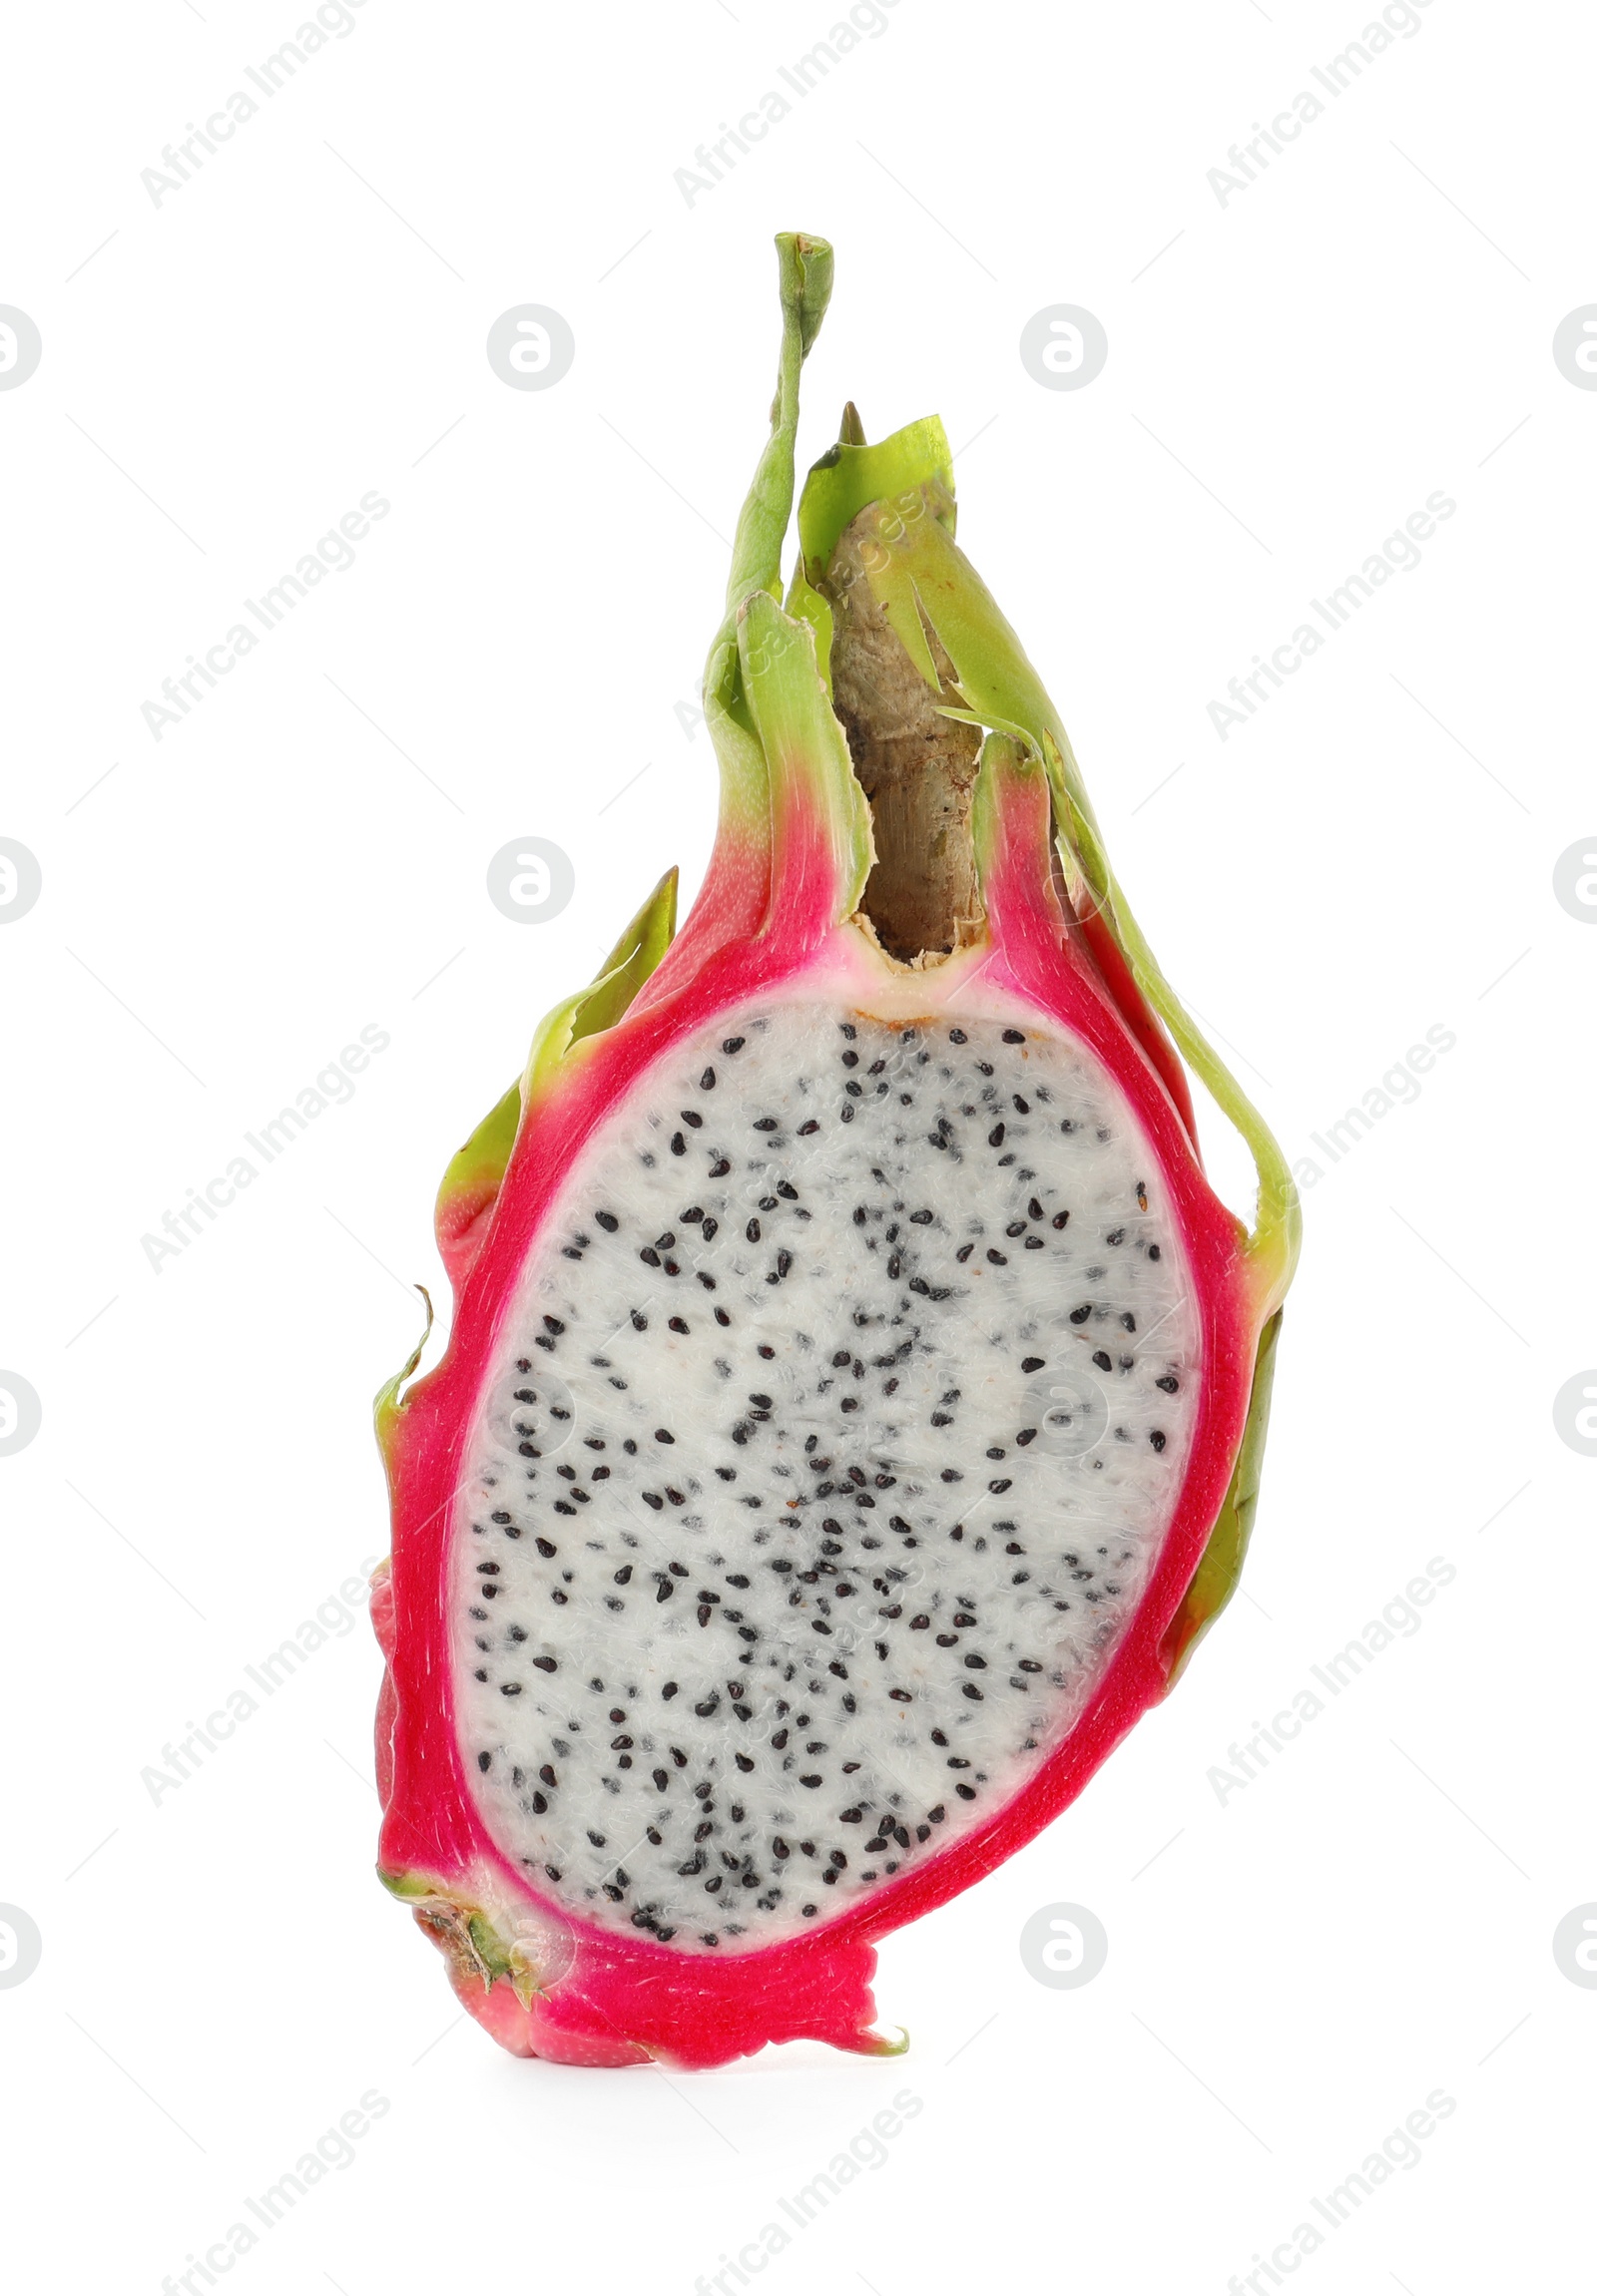 Photo of Halfdelicious dragon fruit (pitahaya) isolated on white